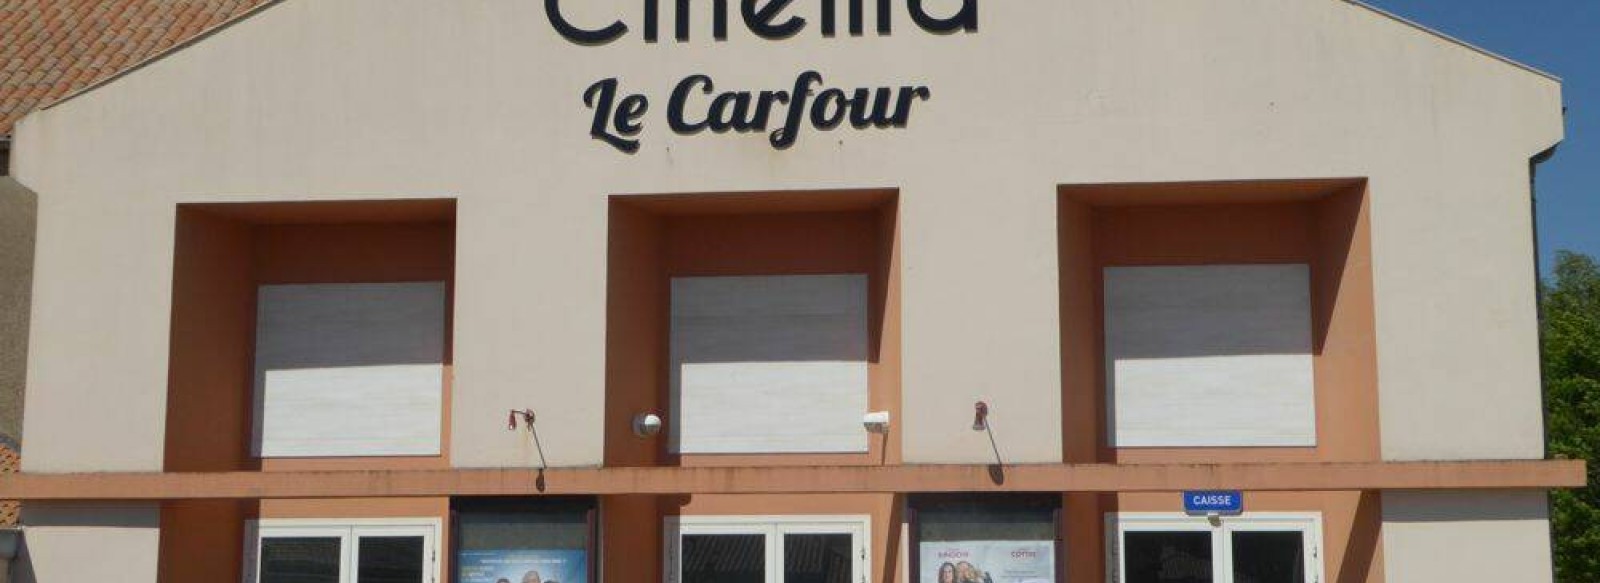 CINEMA LE CARFOUR